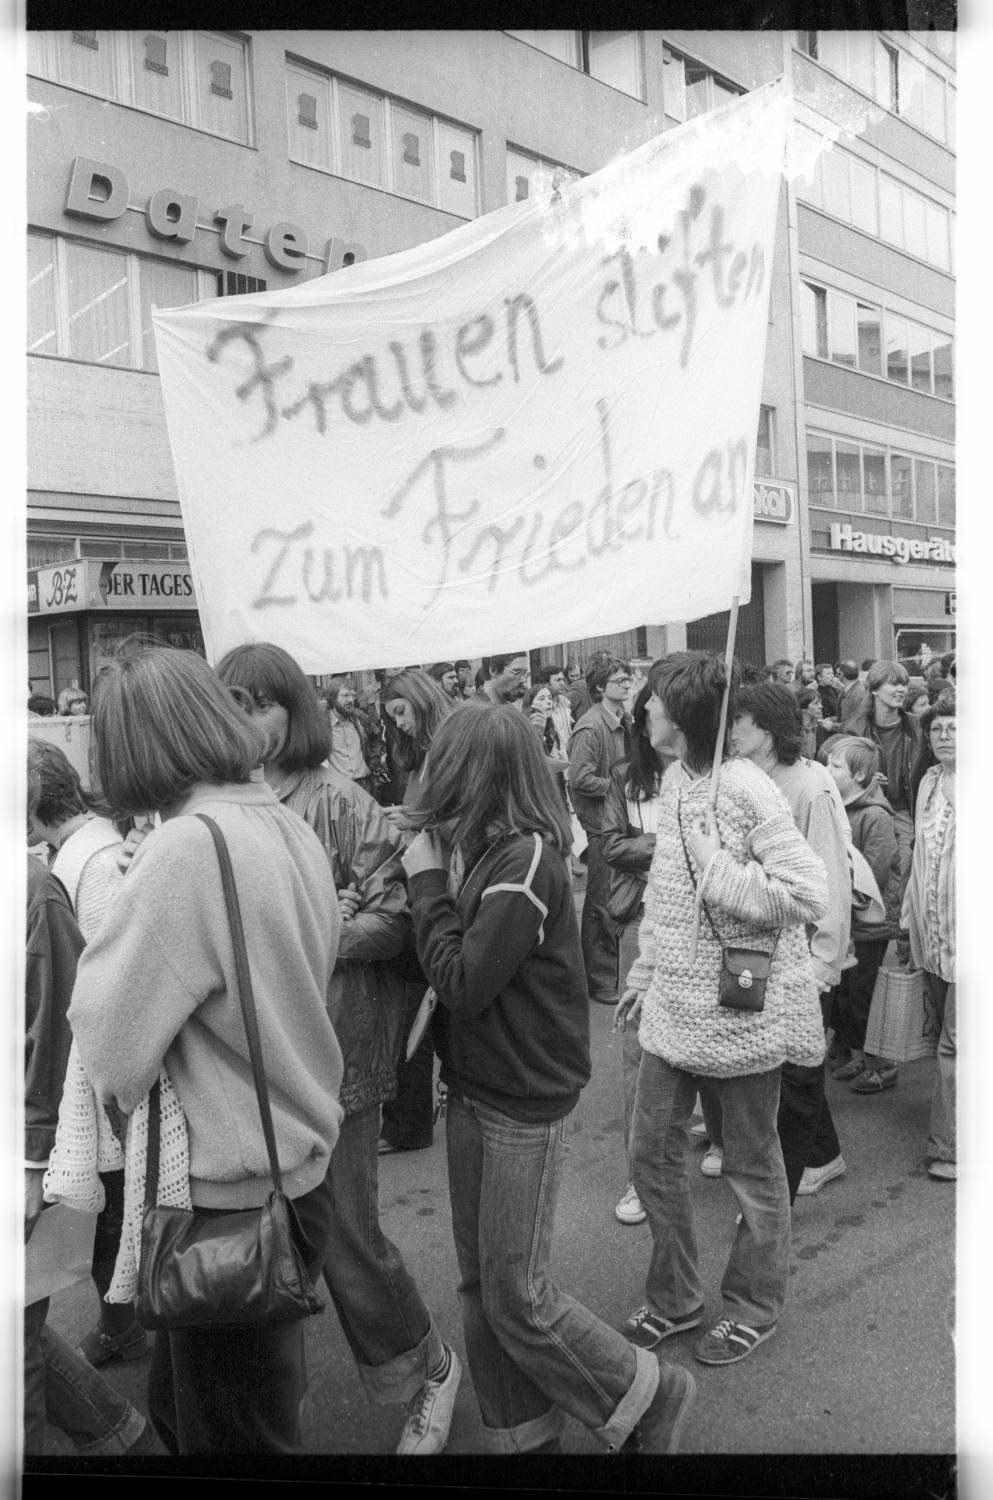 Kleinbildnegative: Friedensdemonstration, Wittenbergplatz, 1980 (Museen Tempelhof-Schöneberg/Jürgen Henschel RR-F)